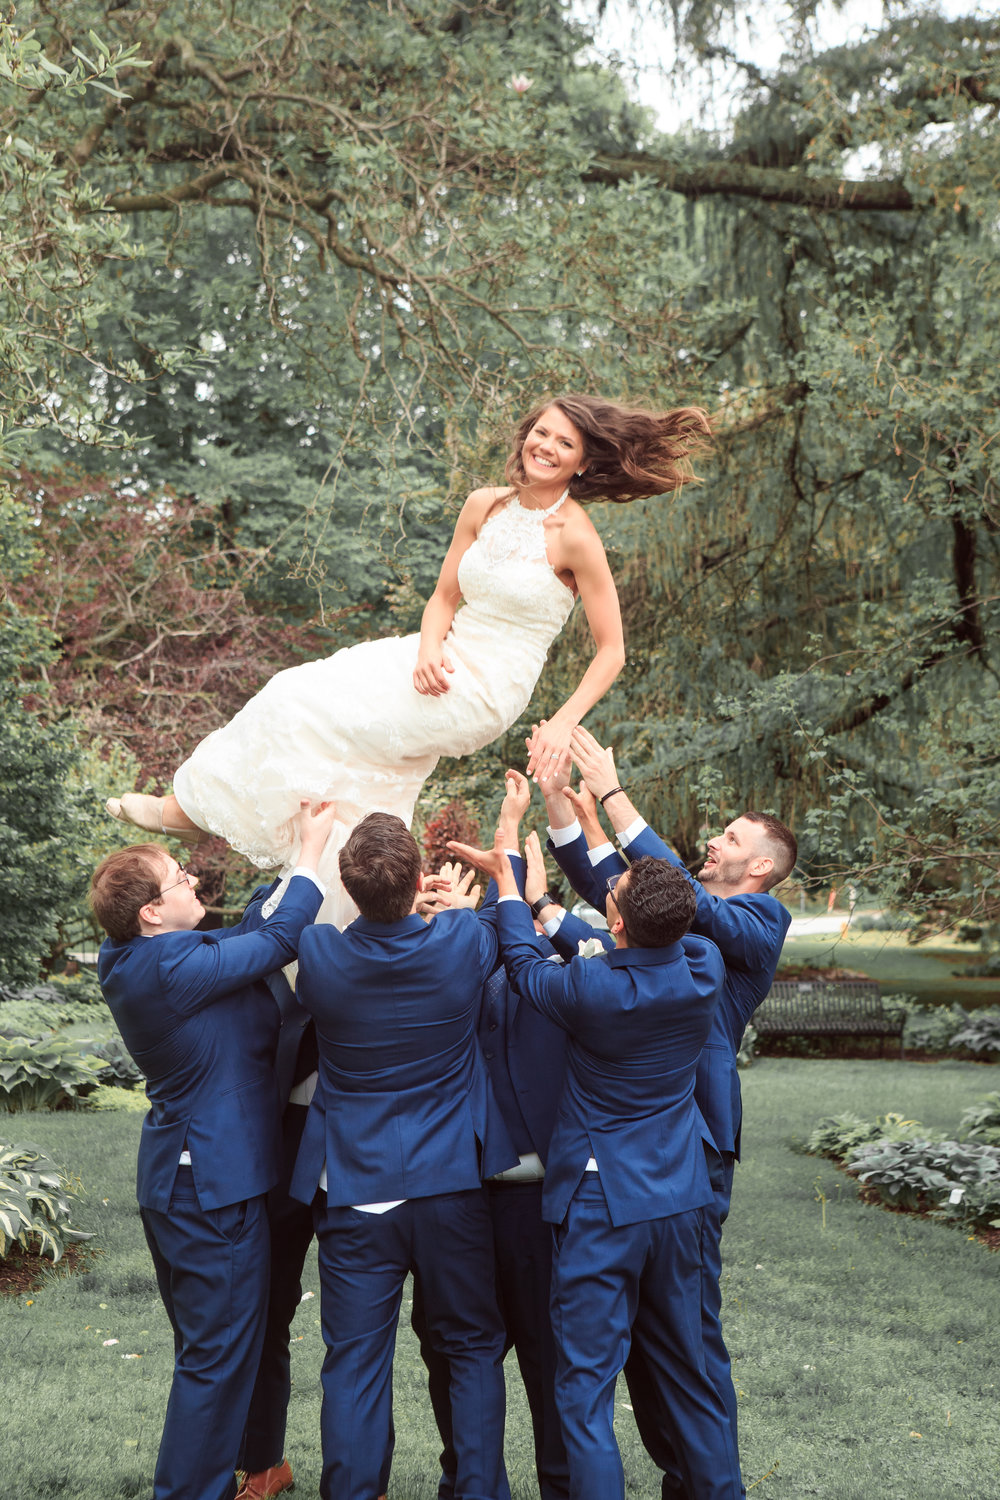 Throwing-bride-in-the-air-fun-wedding-pose-wih-groomsmen-with-bride.jpg